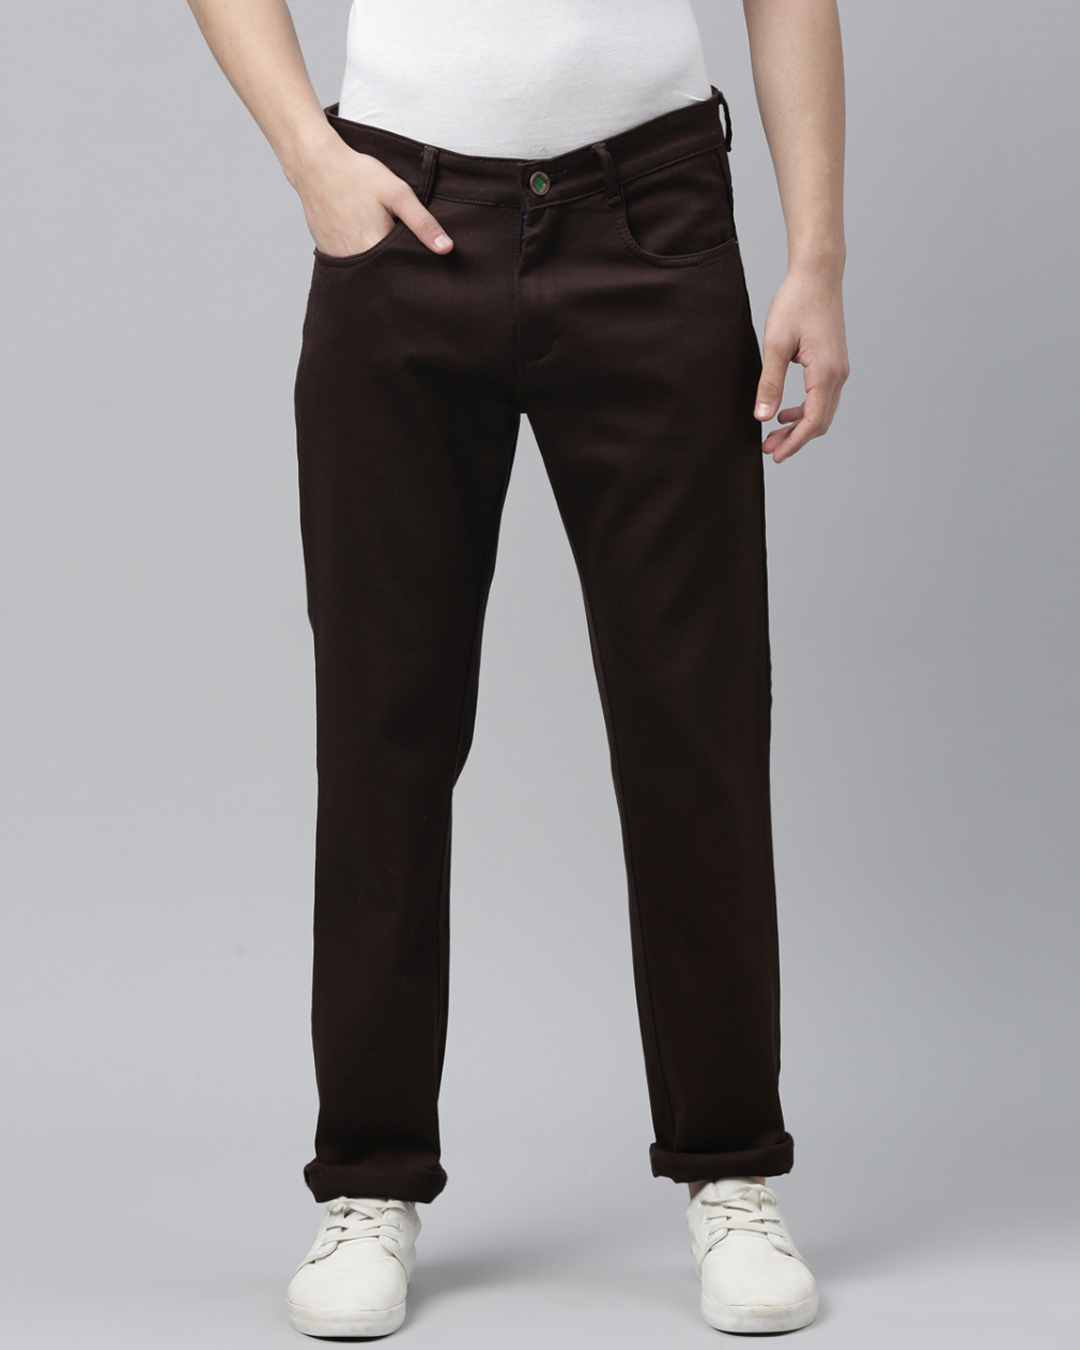 Buy Men's Brown Slim Fit Mid-Rise Jeans Online at Bewakoof